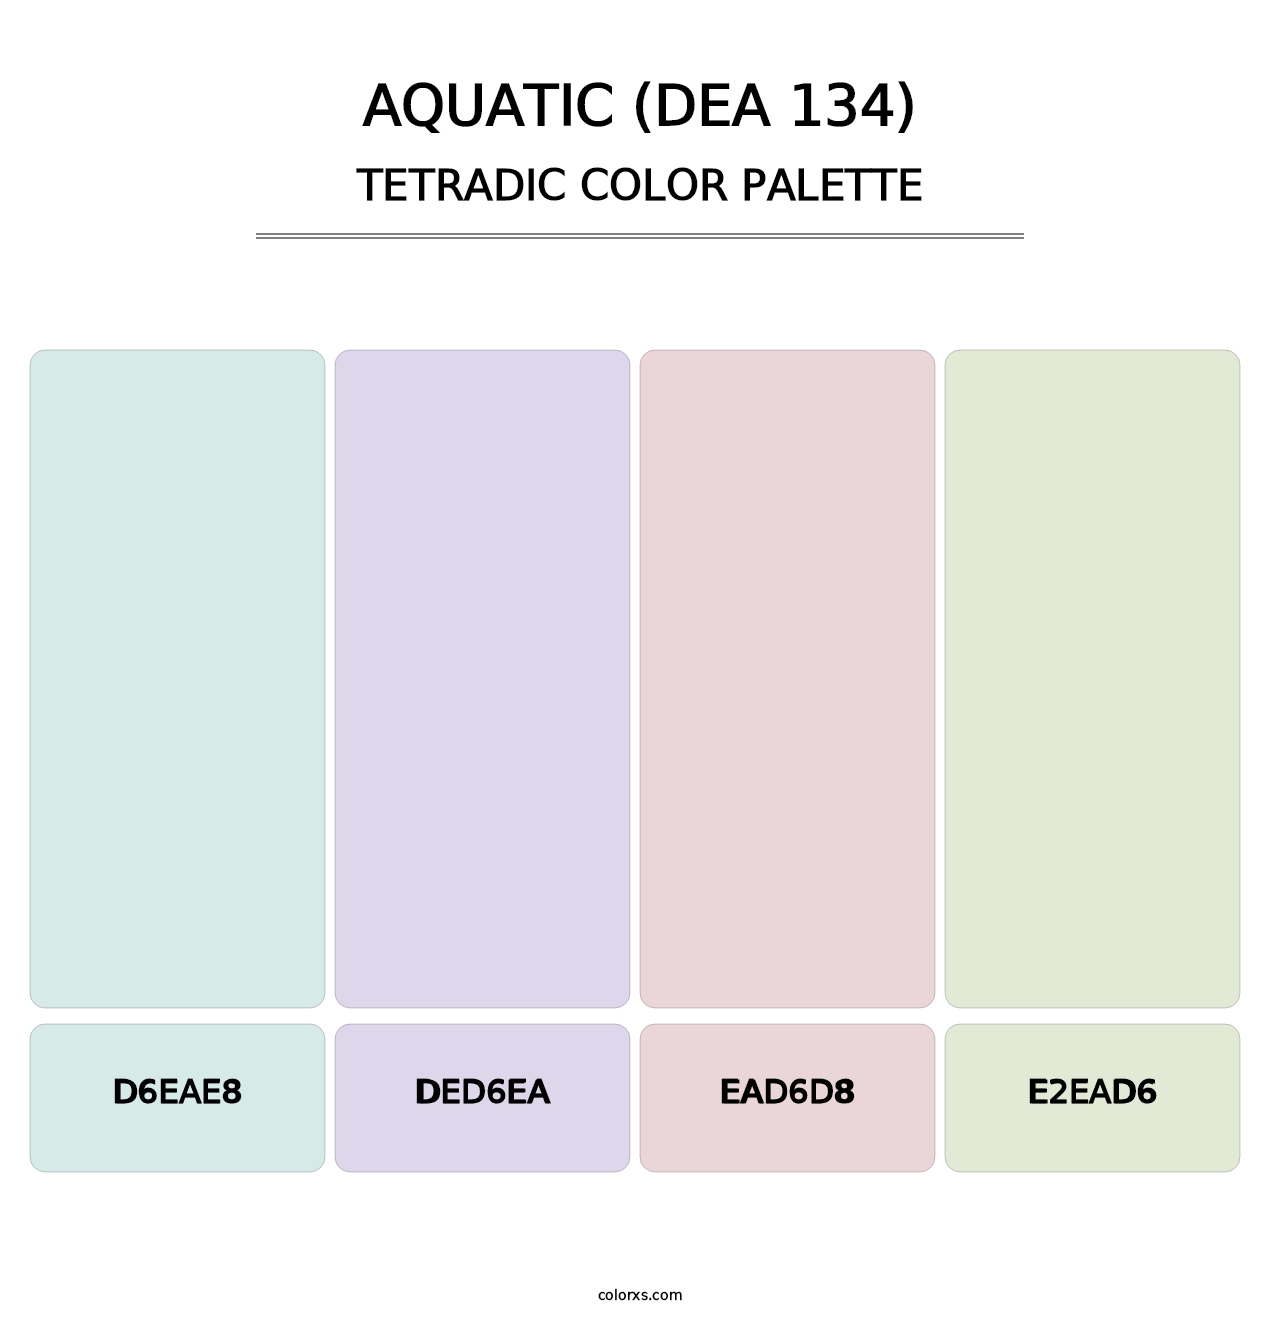 Aquatic (DEA 134) - Tetradic Color Palette